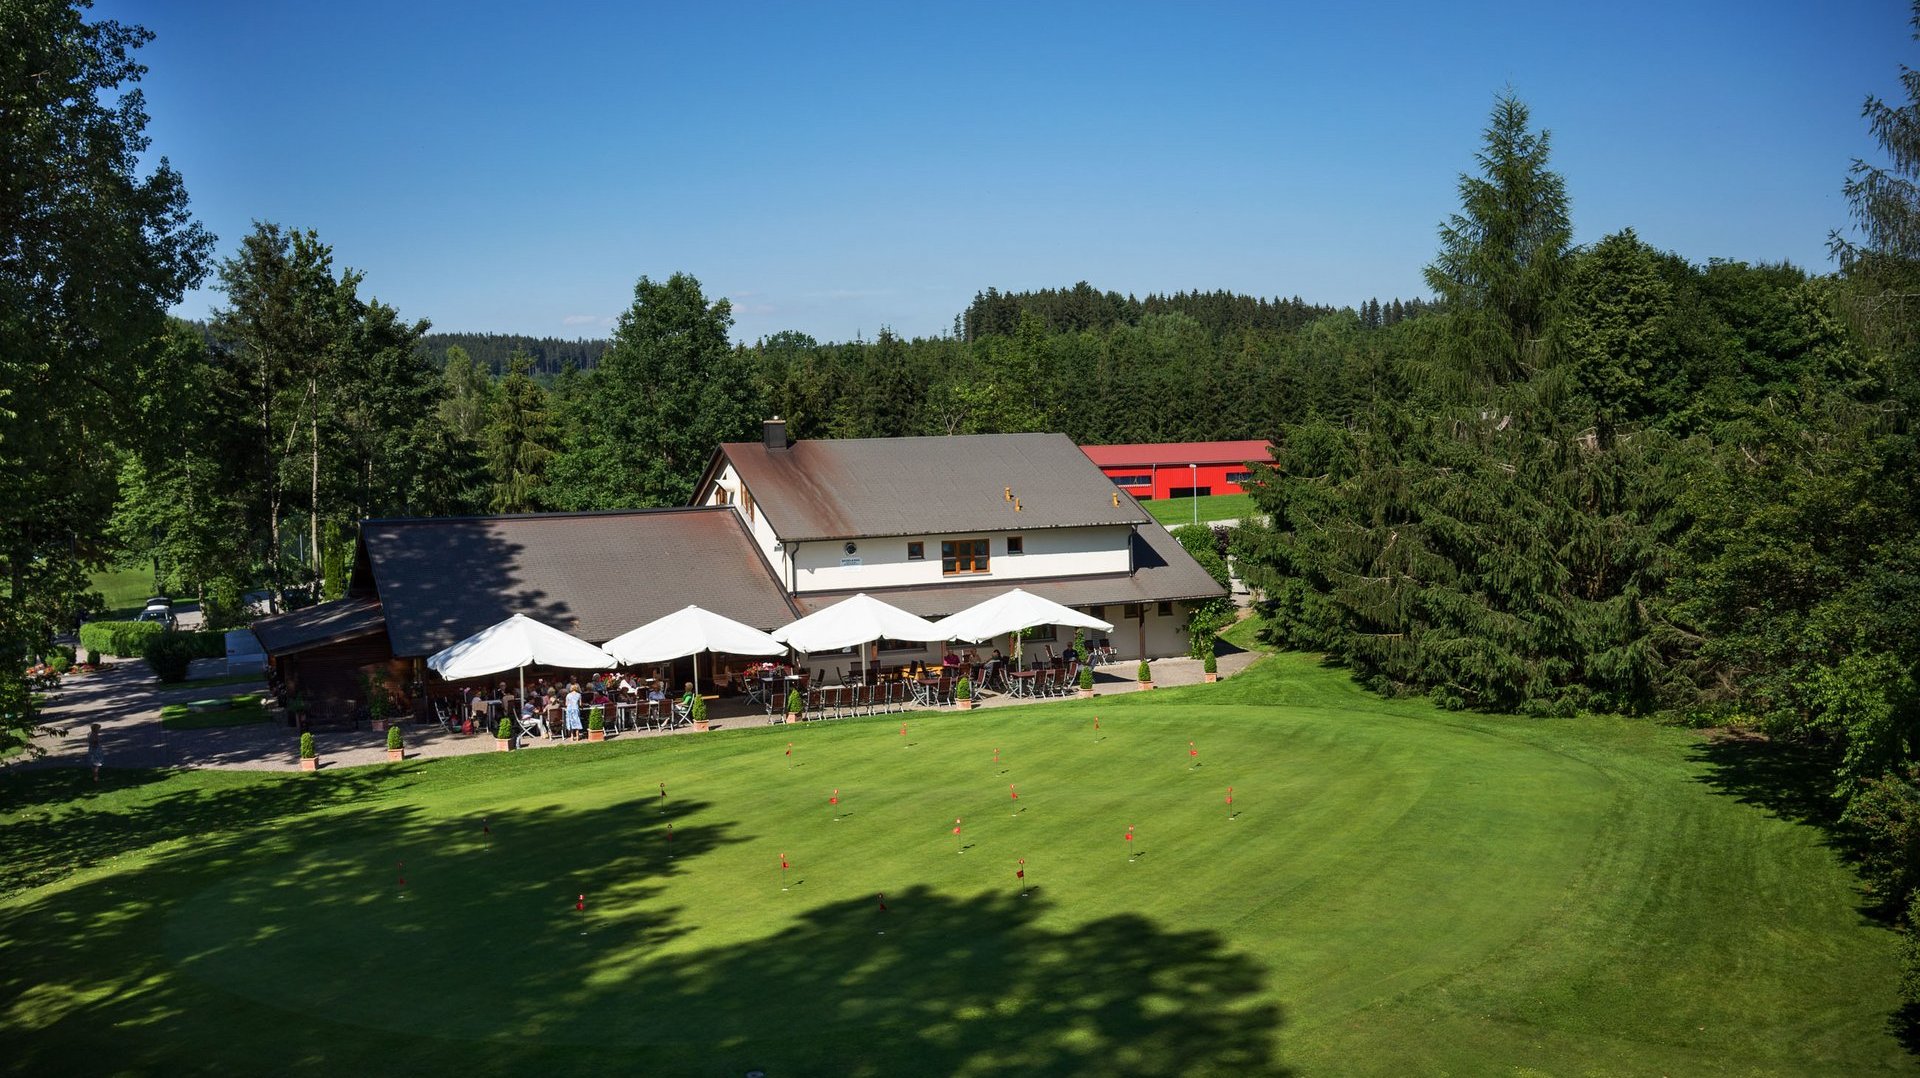 Aufnahme des Clubhauses mit Restaurant des Allgäuer Golf- und Landclub e.V. inkl. Putting Green im Vordergrund